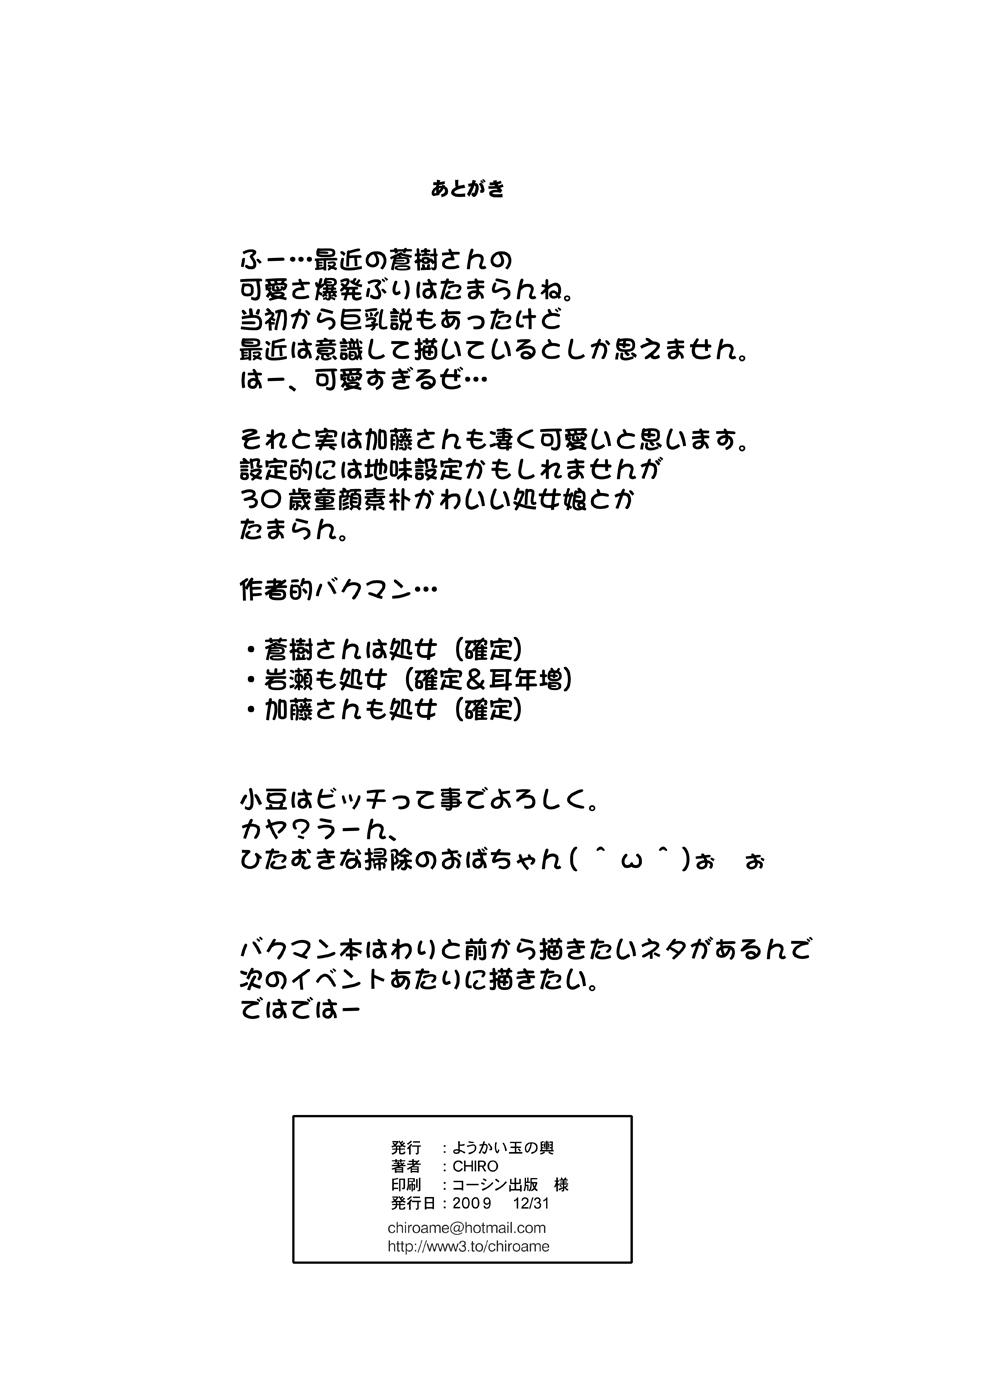 Tamanokoshi Zenbu Tsume 2001 ~ 2022 Venue Limited Edition 32